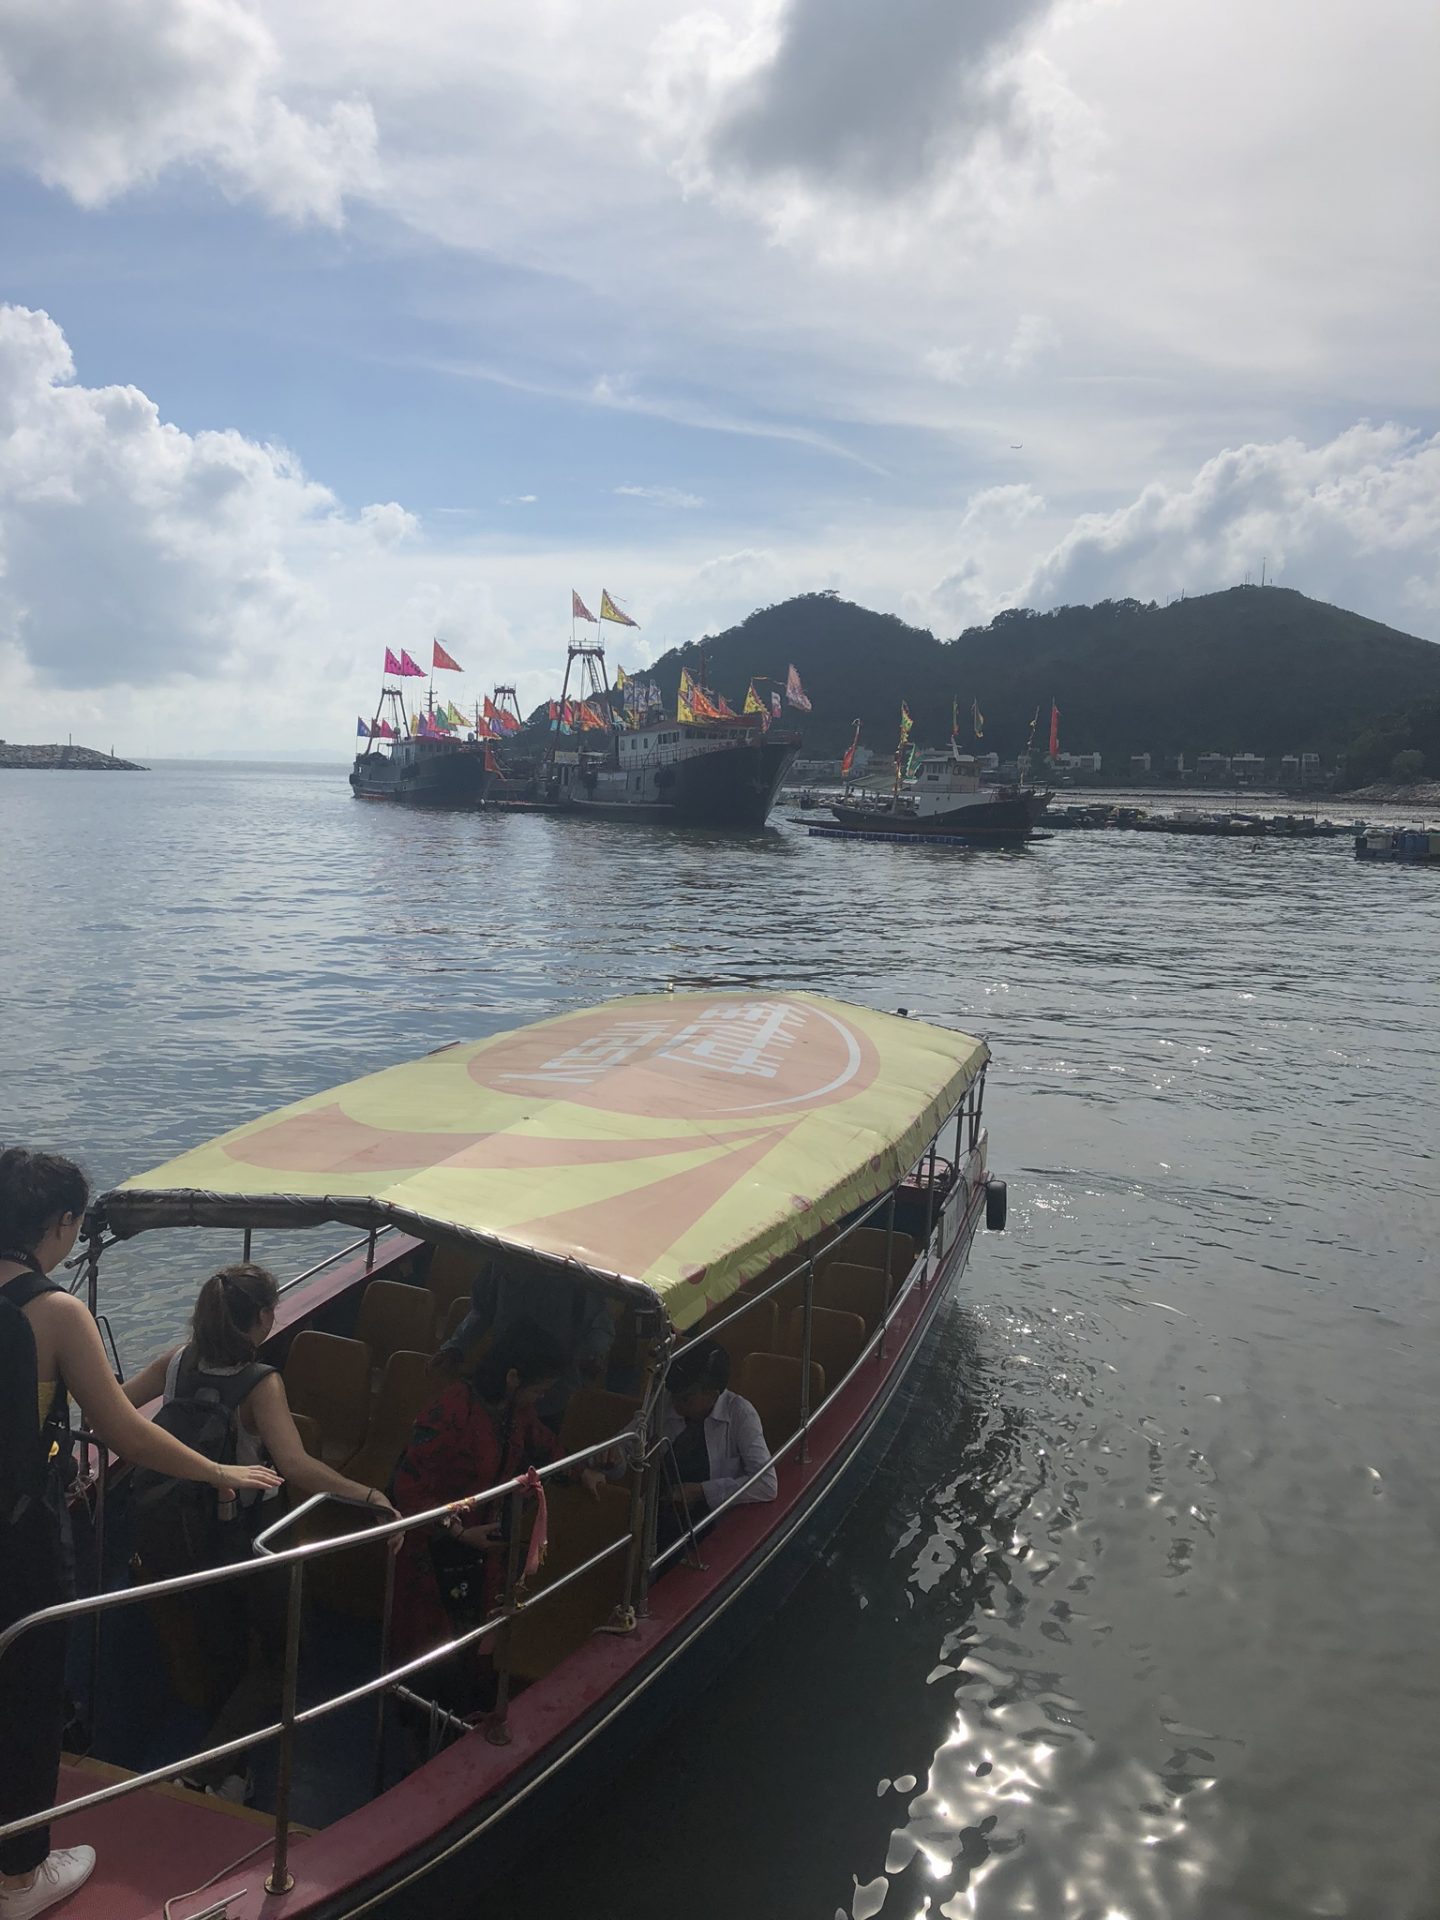 Boats at Tai O Fishing Village